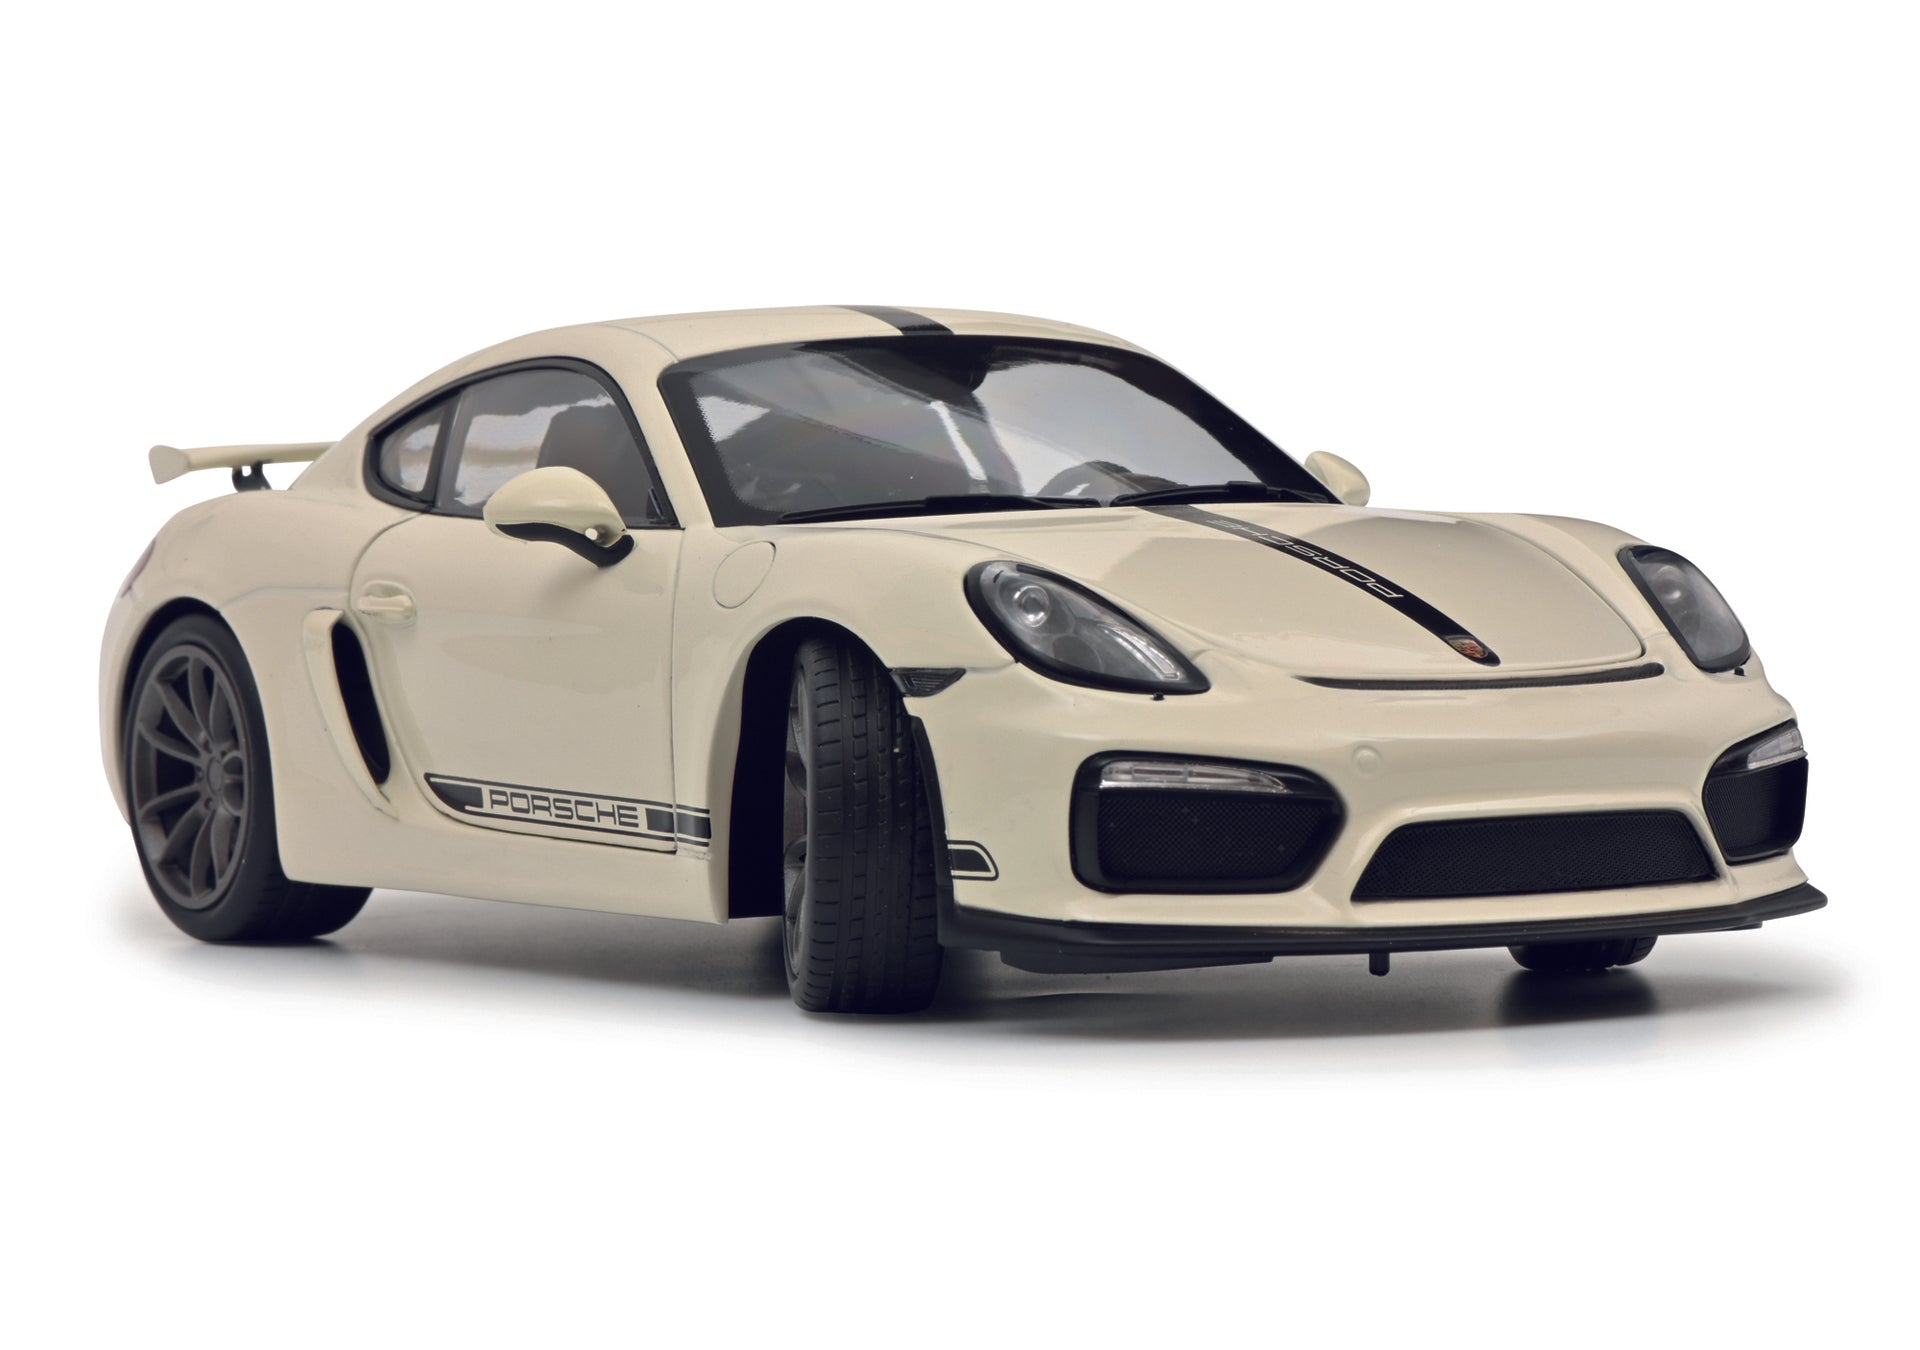 Schuco 450040500 - Porsche Cayman GT4 white 1:18 EAN: 4007864057566, at Ajckids.com, authorized Schuco dealer for the USA.